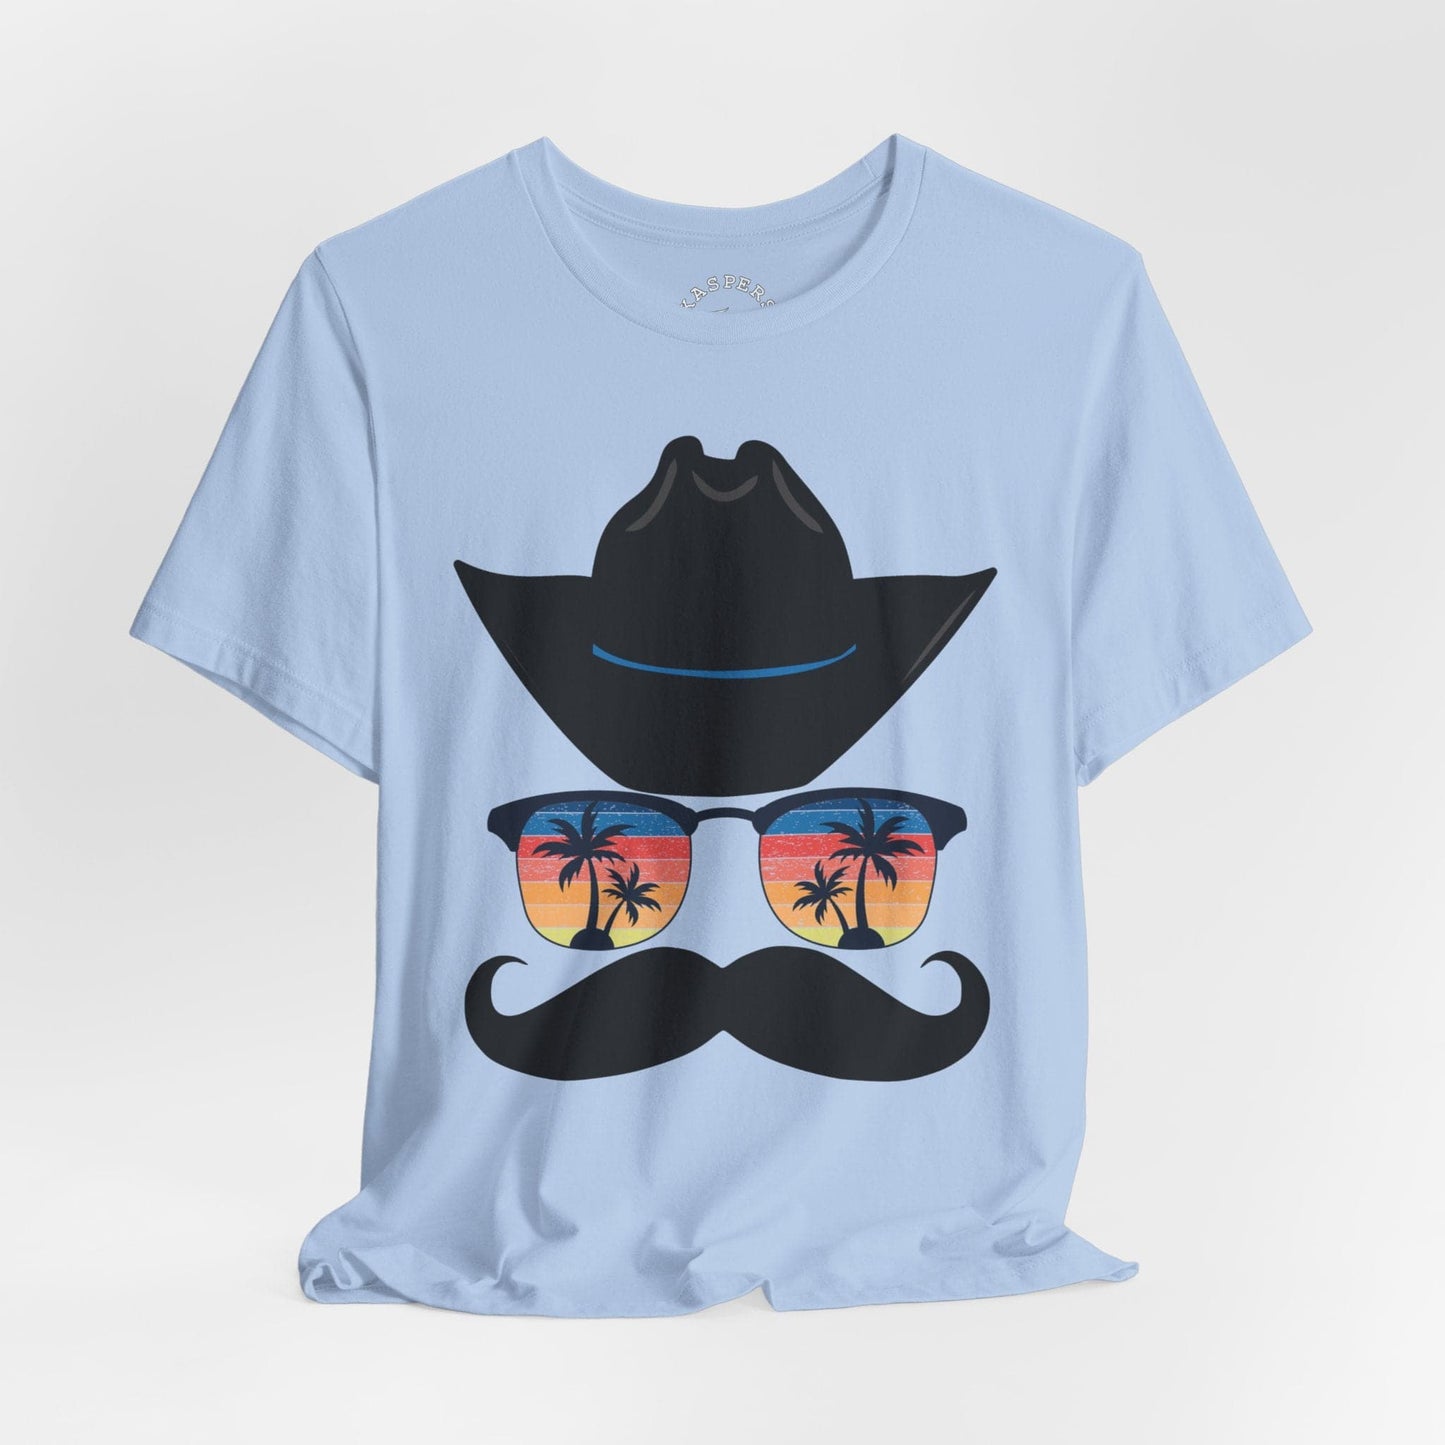 Mustache Cowboy T-Shirt